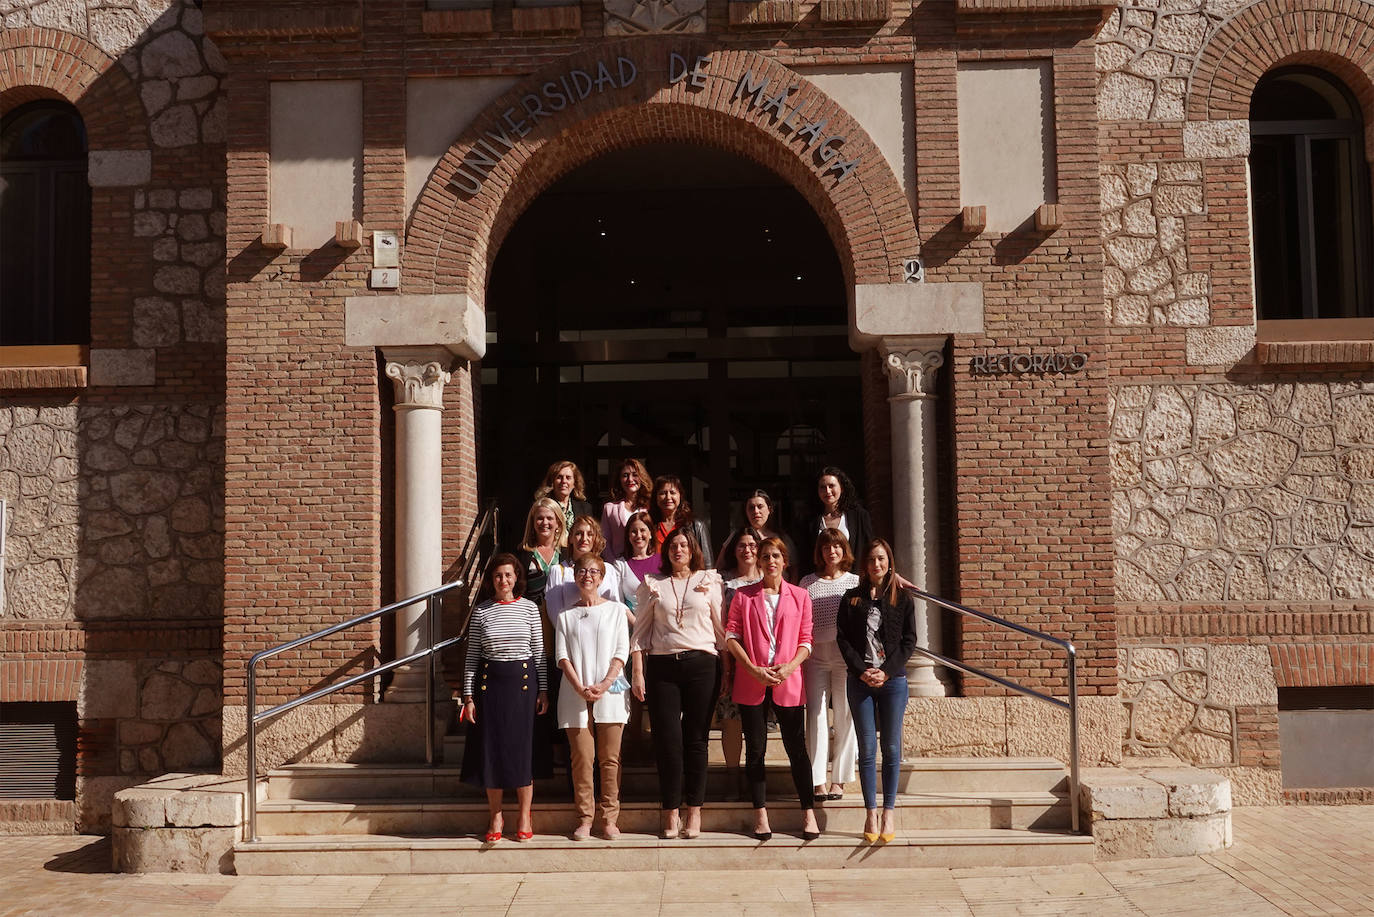 La UMA acoge el primer Foro de Mujeres Líderes de Málaga